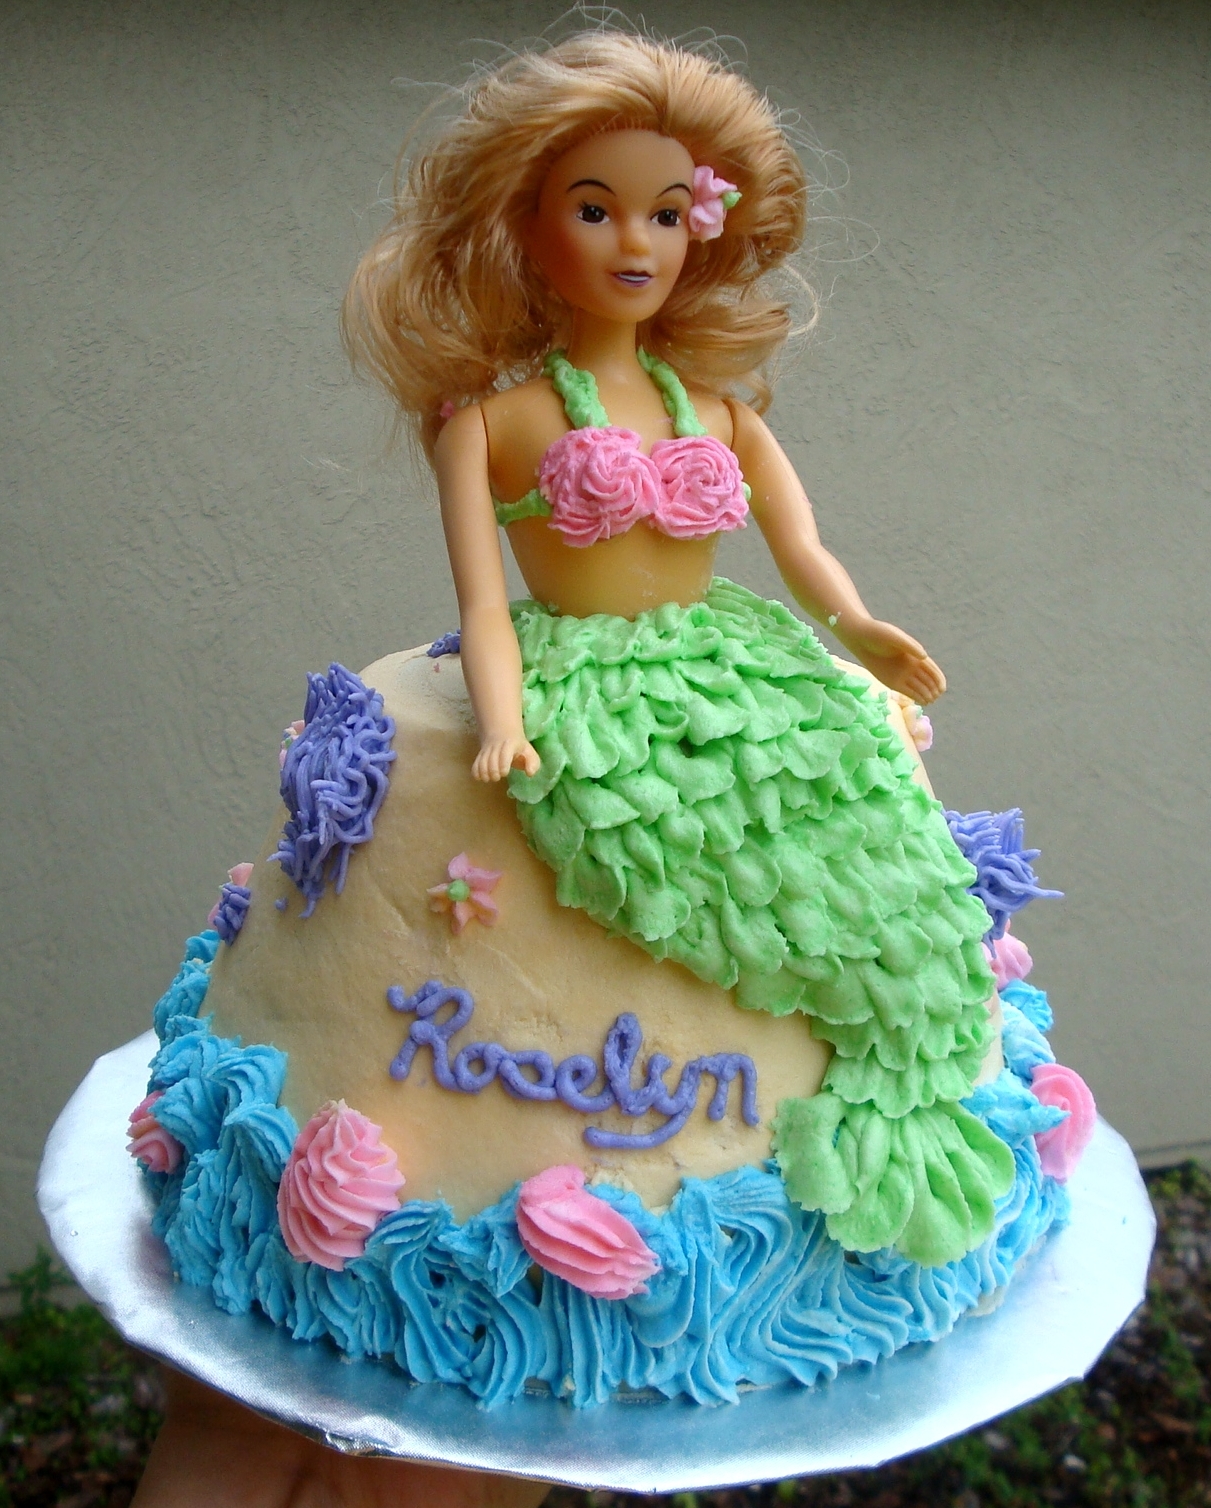 Mermaid Cake | Cakes for Girls | Pinterest | Mermaid cakes ...